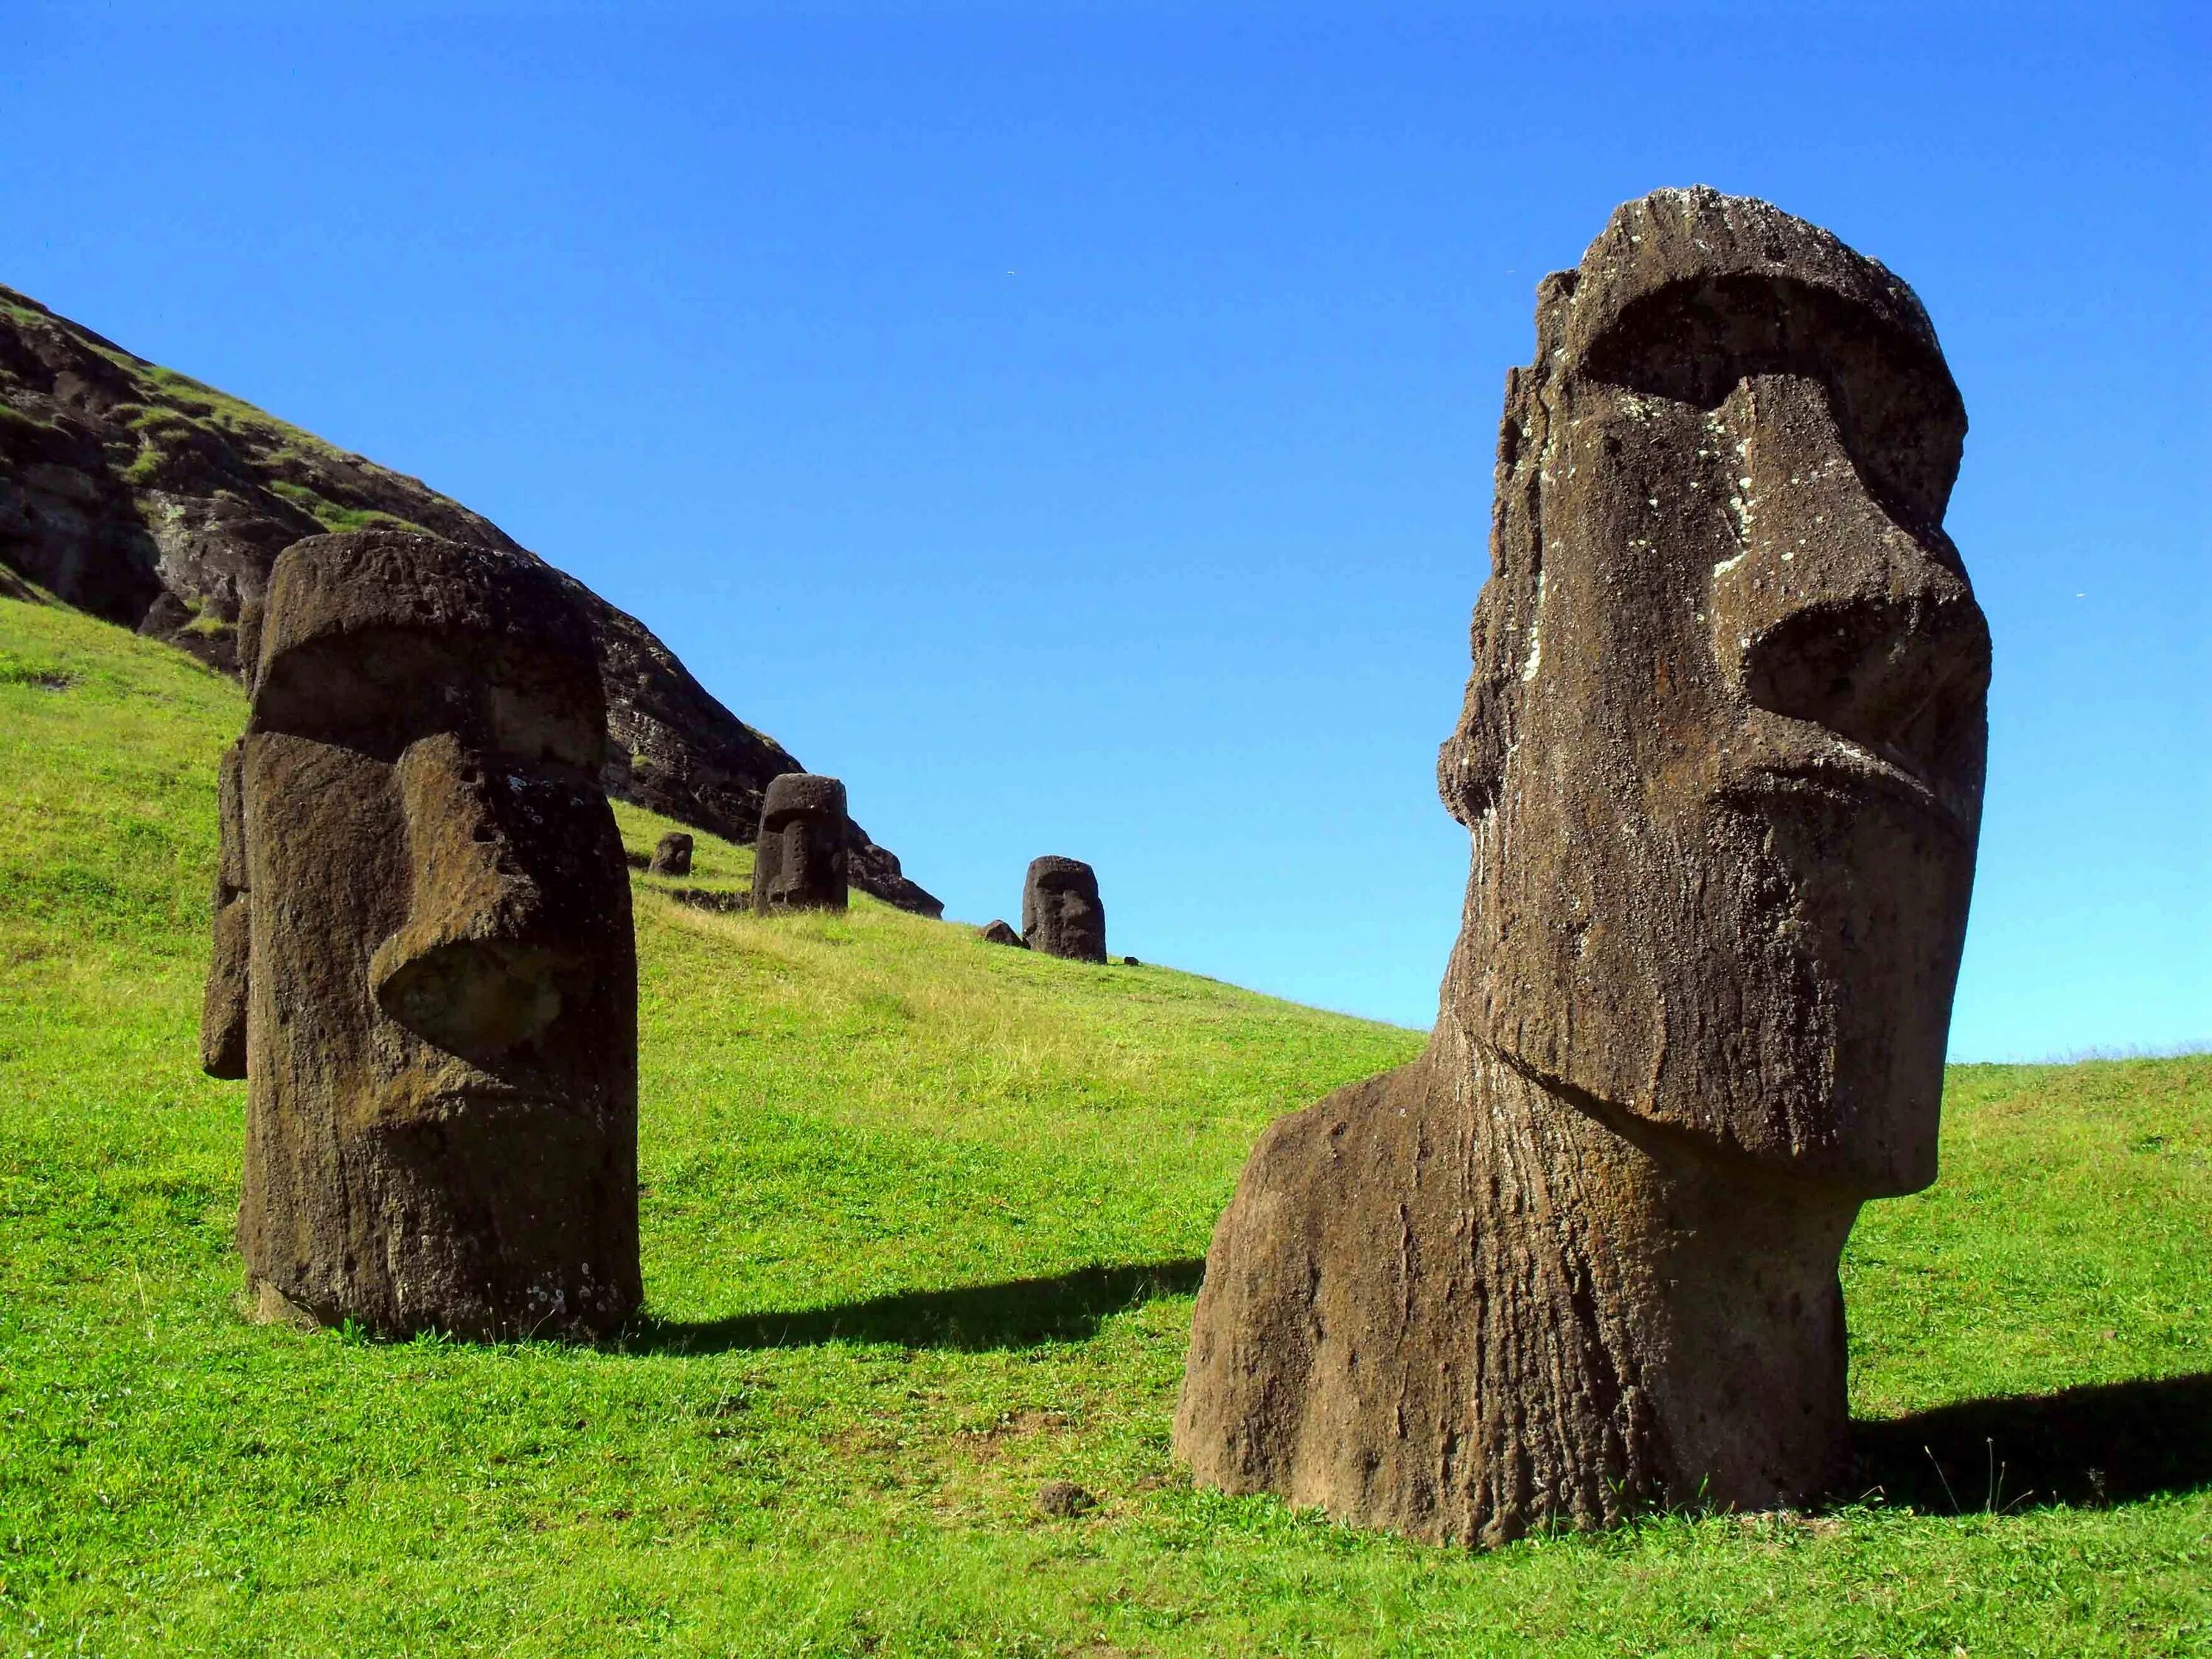 Моаи (статуи острова Пасхи), Чили. Каменные статуи Моаи остров Пасхи Чили. Истуканы Рапа-Нуи остров Пасхи. Статуи Моаи в Чили.